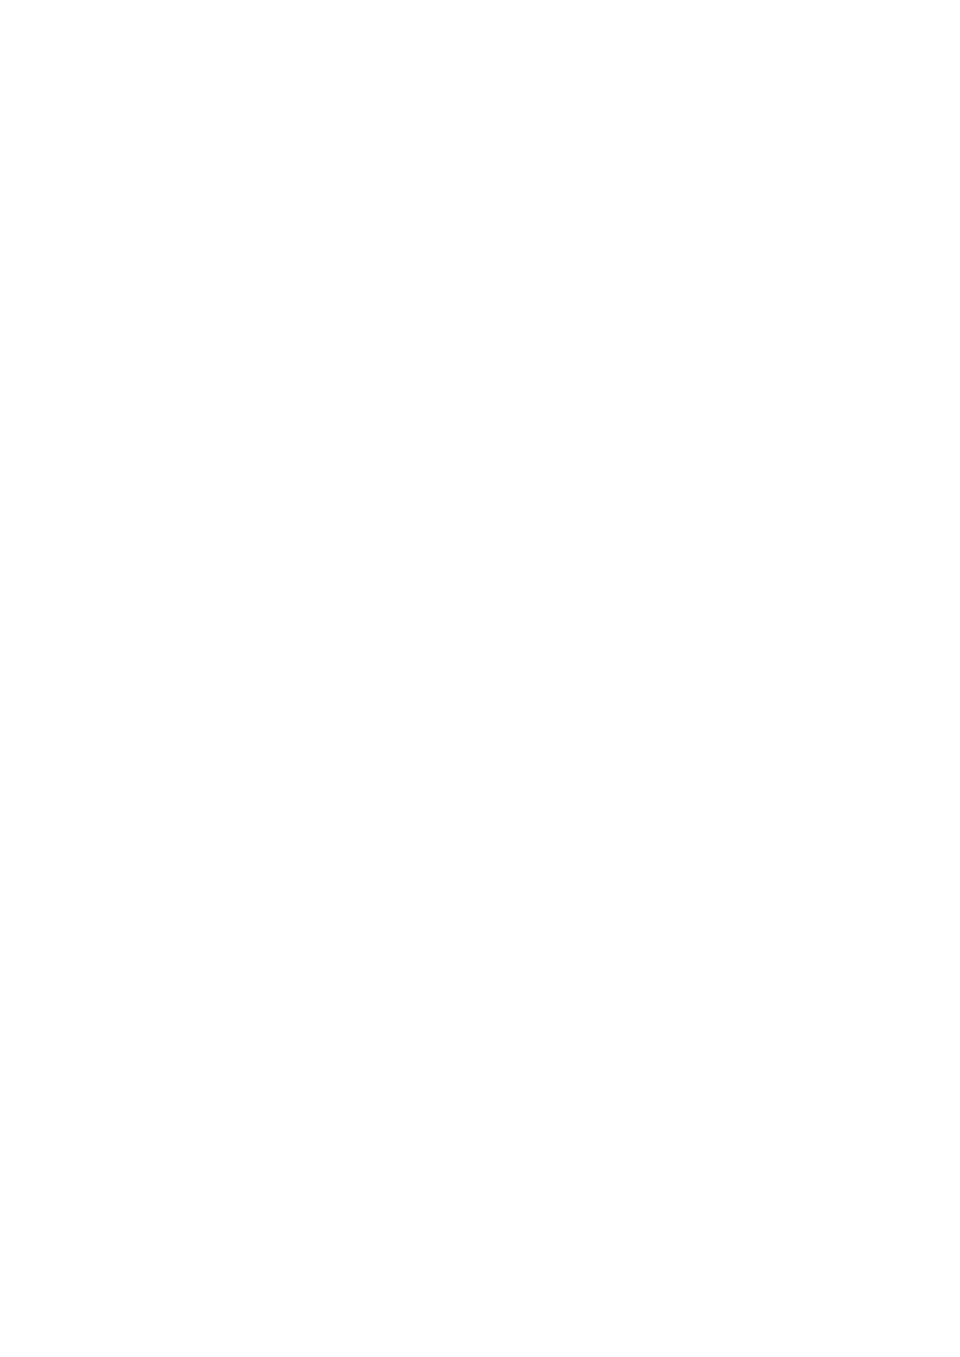 (2007) 大 國 崛 起 日 本 台 北 市 : 青 林 國 際 出 版 股 份 有 限 公 司 五 維 基 百 科 - 黑 船 事 件 2016 年 2 月 3 日 取 自 : https://zh.wikipedia.